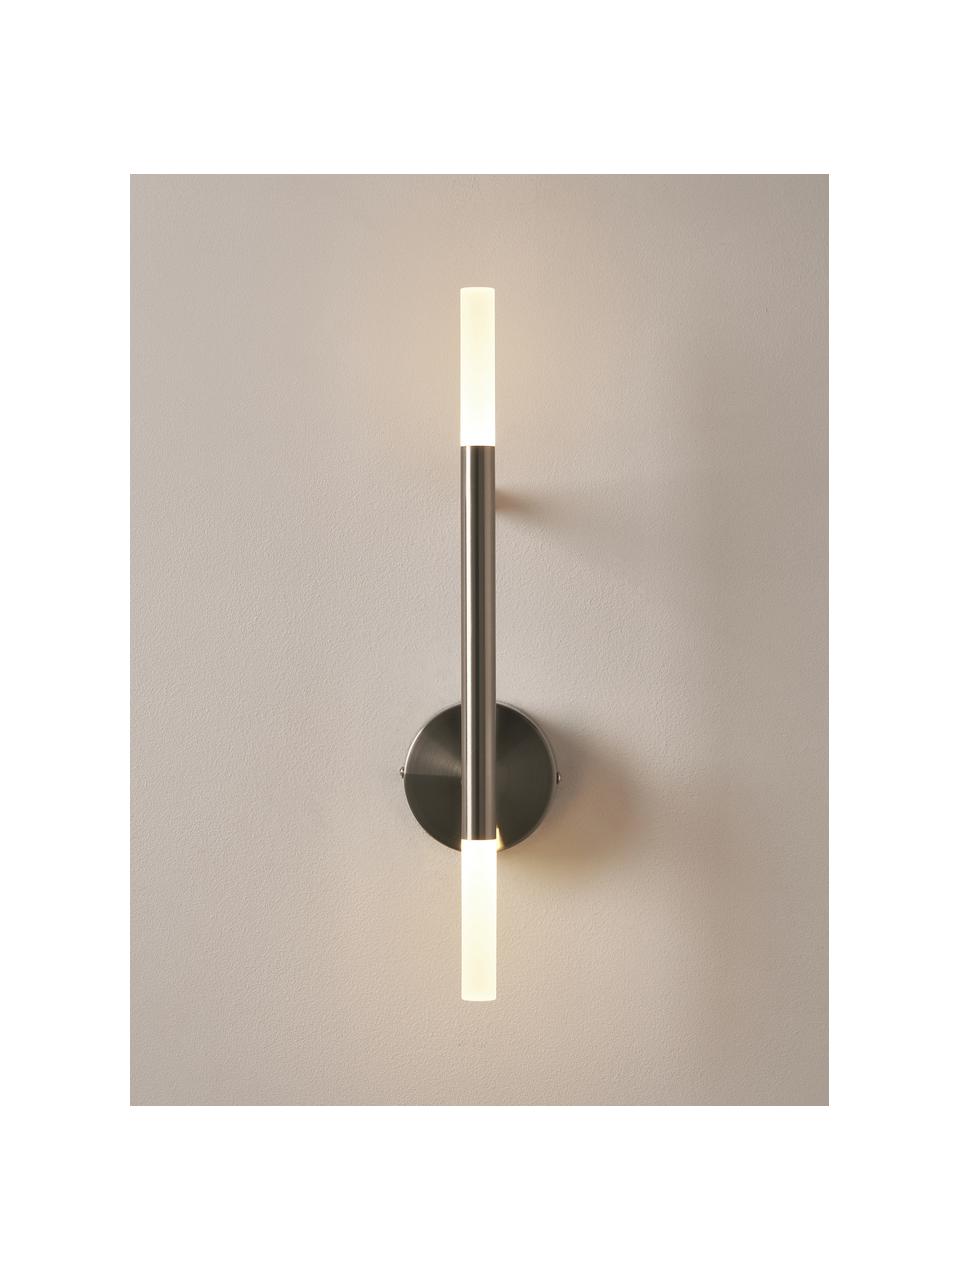 Grote LED wandlamp Gratia, Chroomkleurig, wit, B 10 x H 45 cm